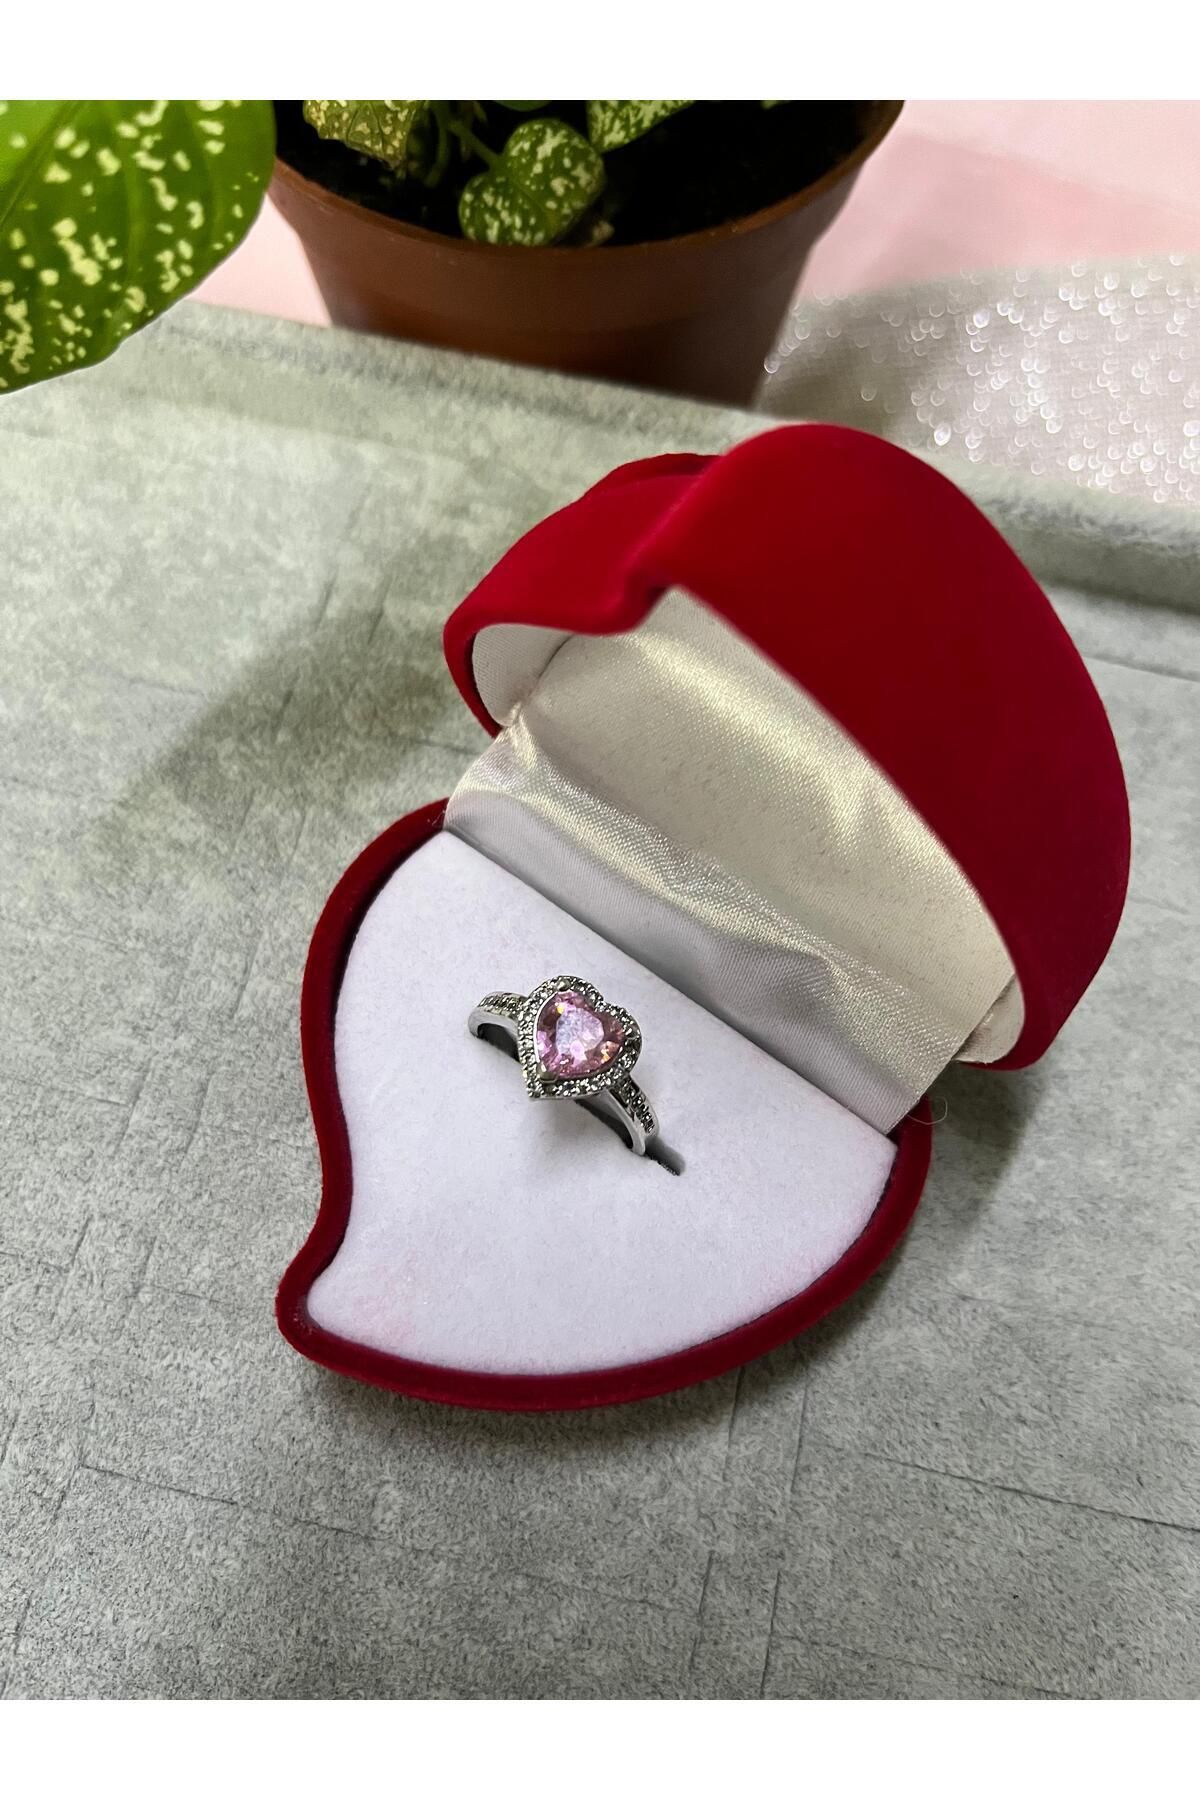 Sepetten Eve Kalpli Kutuda Kalpli ayarlanabilir ciddi ilişki yüzüğü hediye pandora`s yüzük sevgiliye hediye